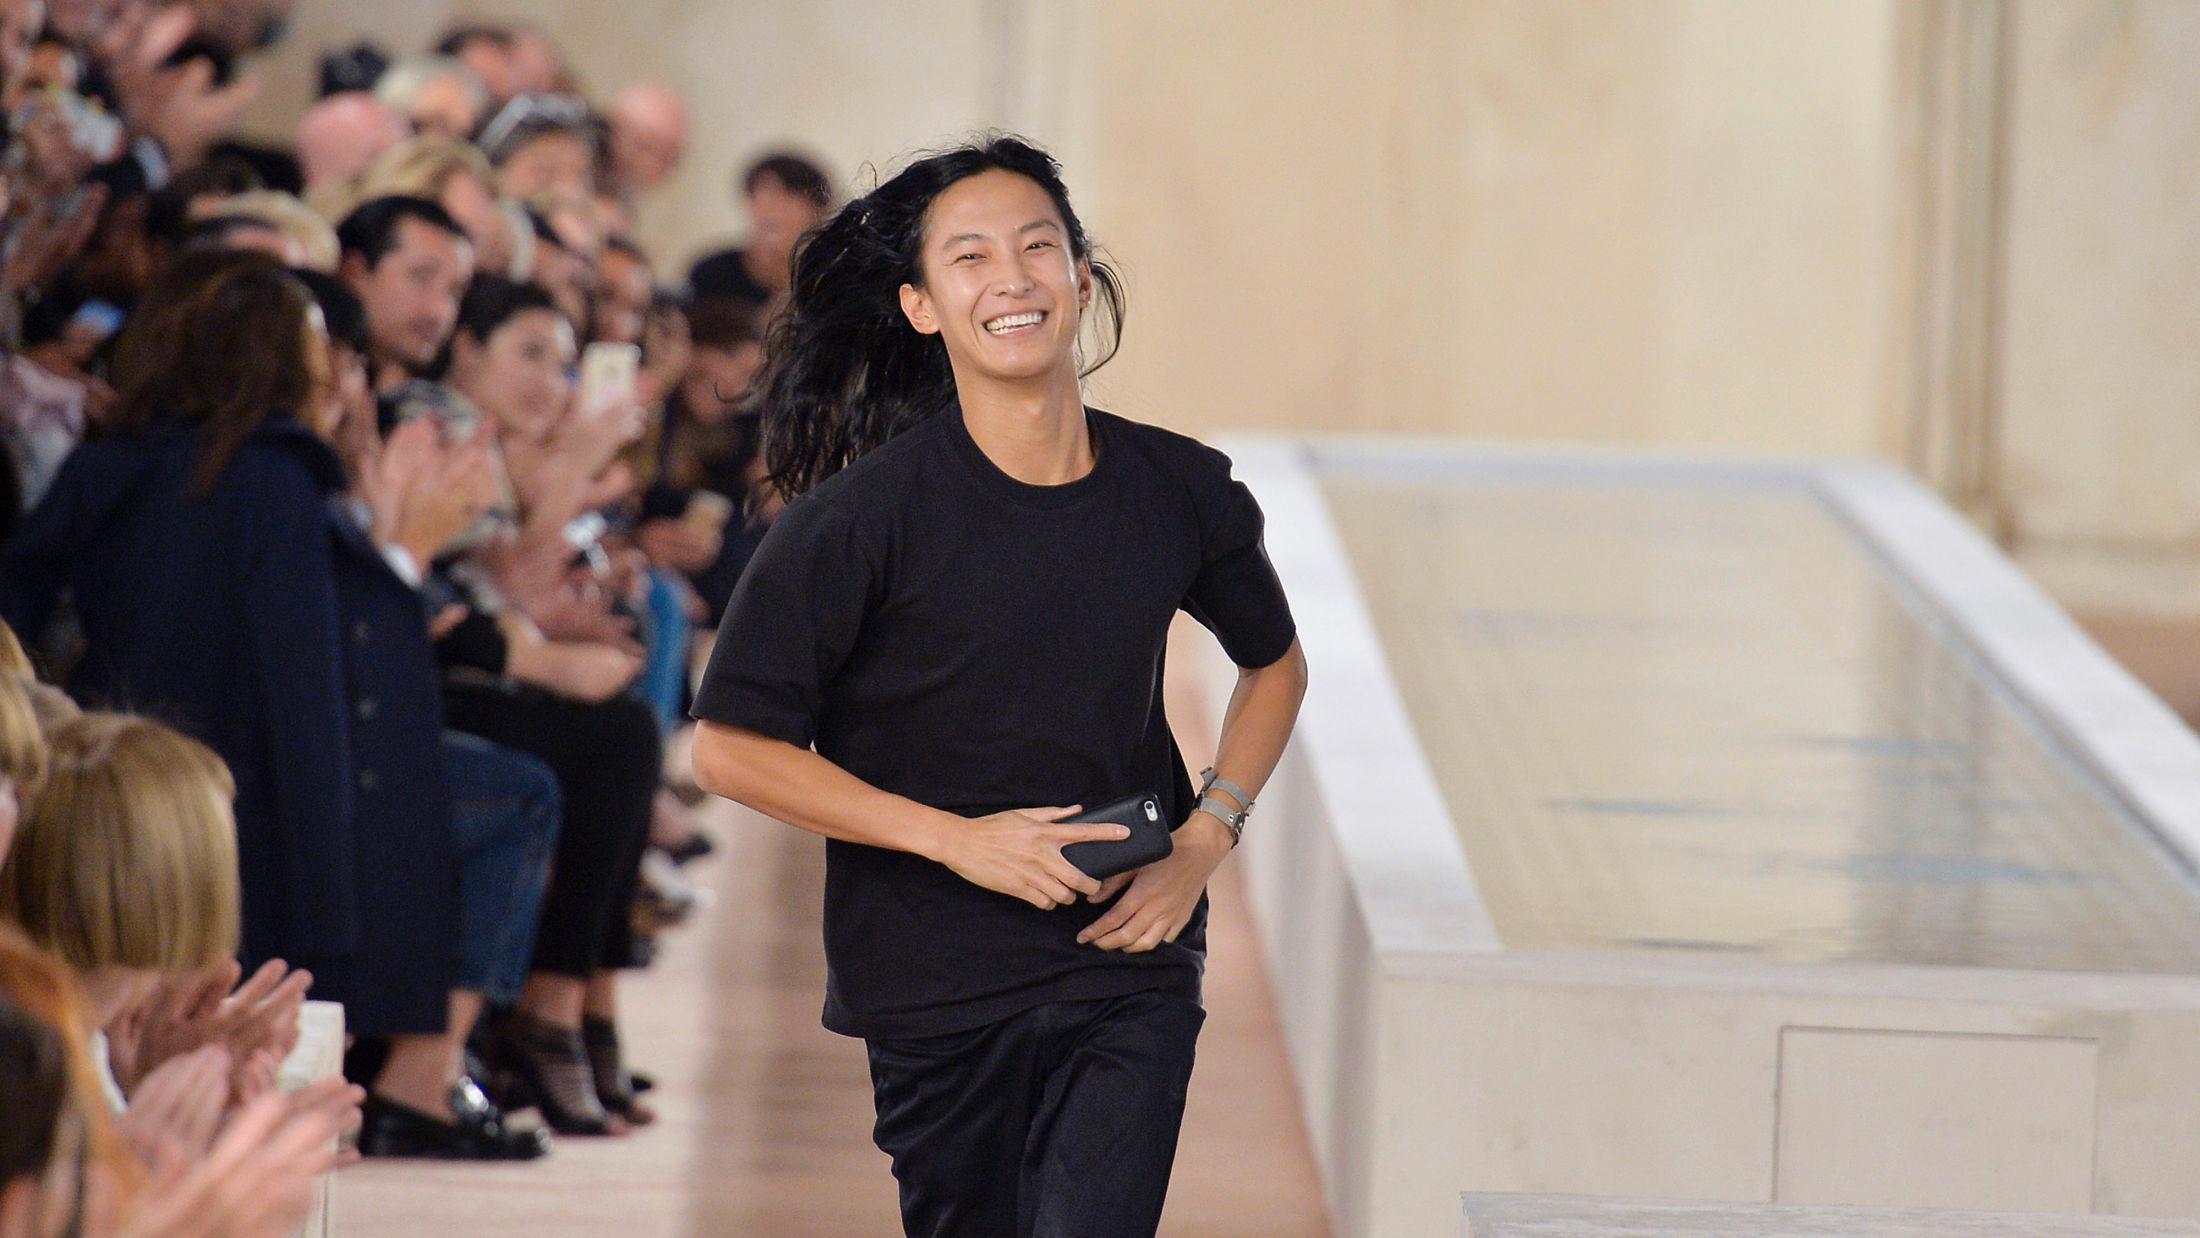 FORLATER MERKET: Alexander Wang løp ut på catwalken for siste gang for motehuset Balenciaga. Nå er det designeren Demna Gvasalia som tar over det kreative ansvaret. Foto: Getty Images